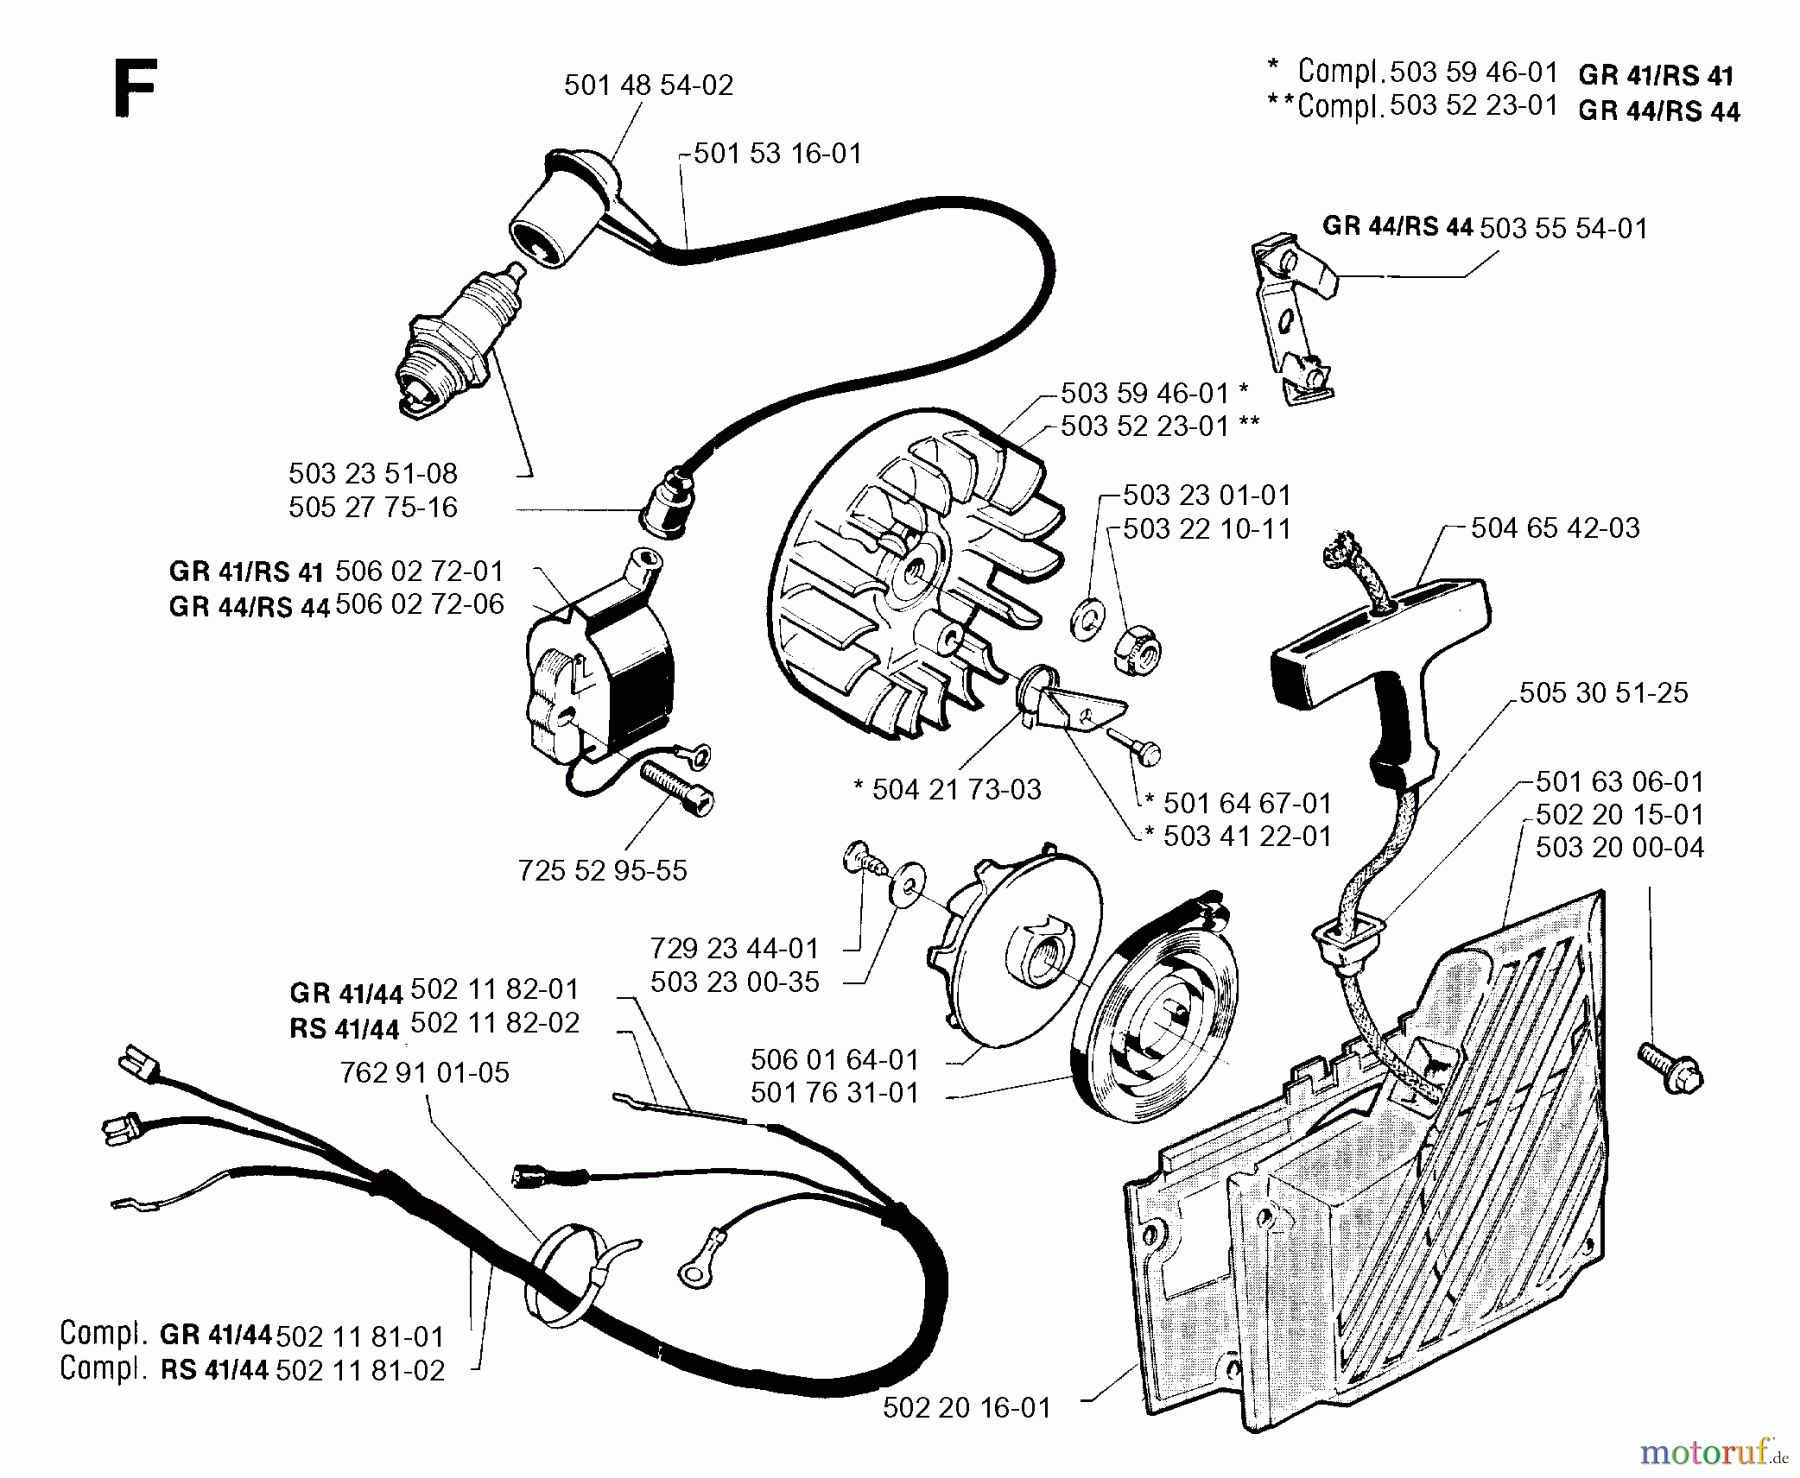  Jonsered Motorsensen, Trimmer GR41 - Jonsered String/Brush Trimmer (1992-09) STARTER